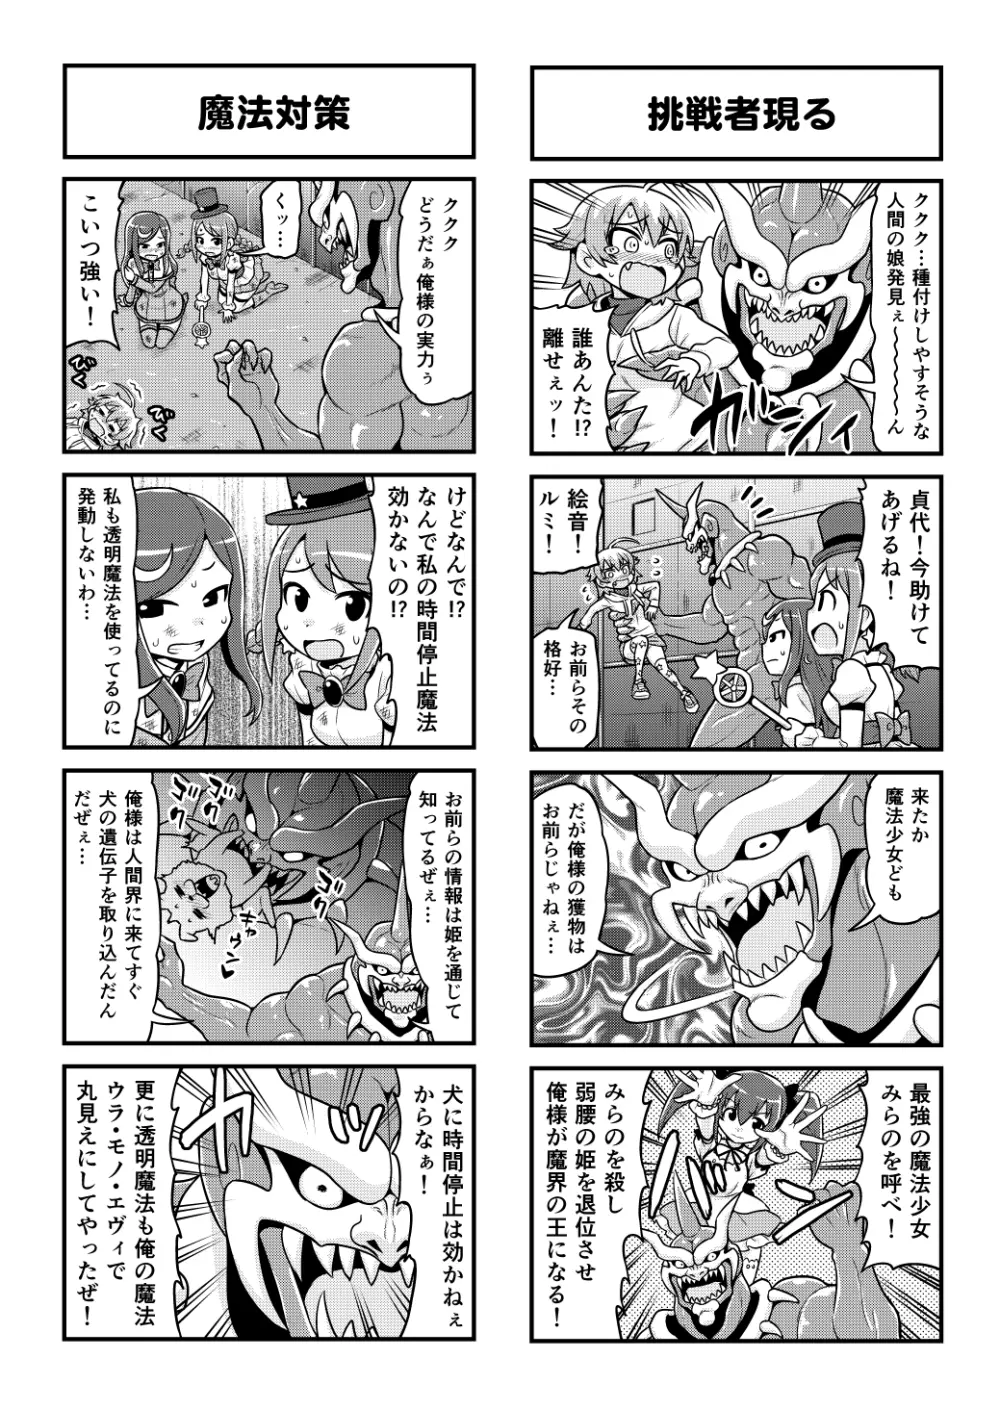 のんきBOY 1-48 - page413